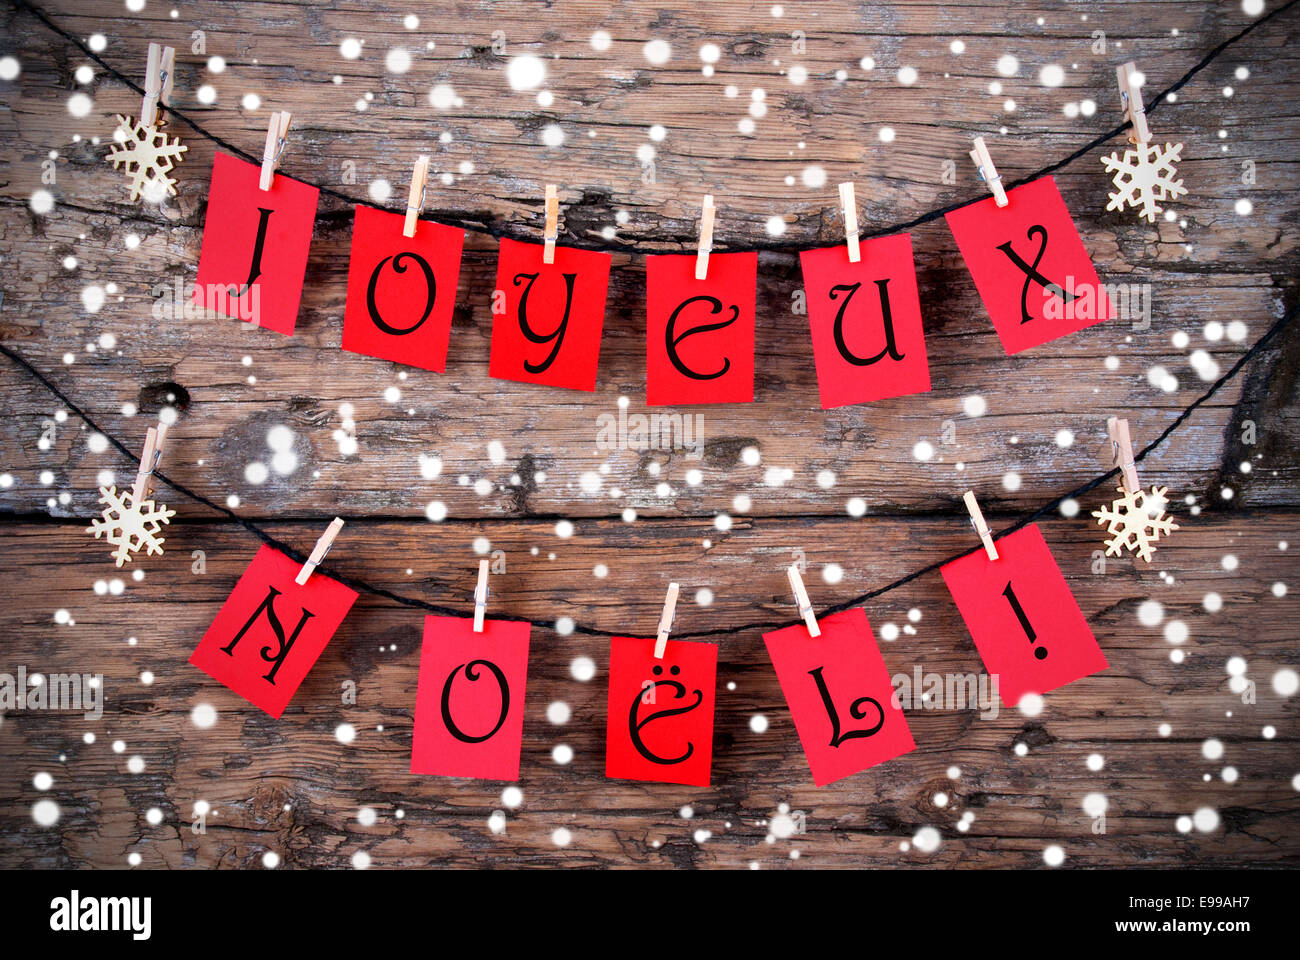 Snowy Christmas background con las palabras en francés Joyeux Noël de etiquetas rojas, lo que significa ¡Feliz Navidad! Foto de stock